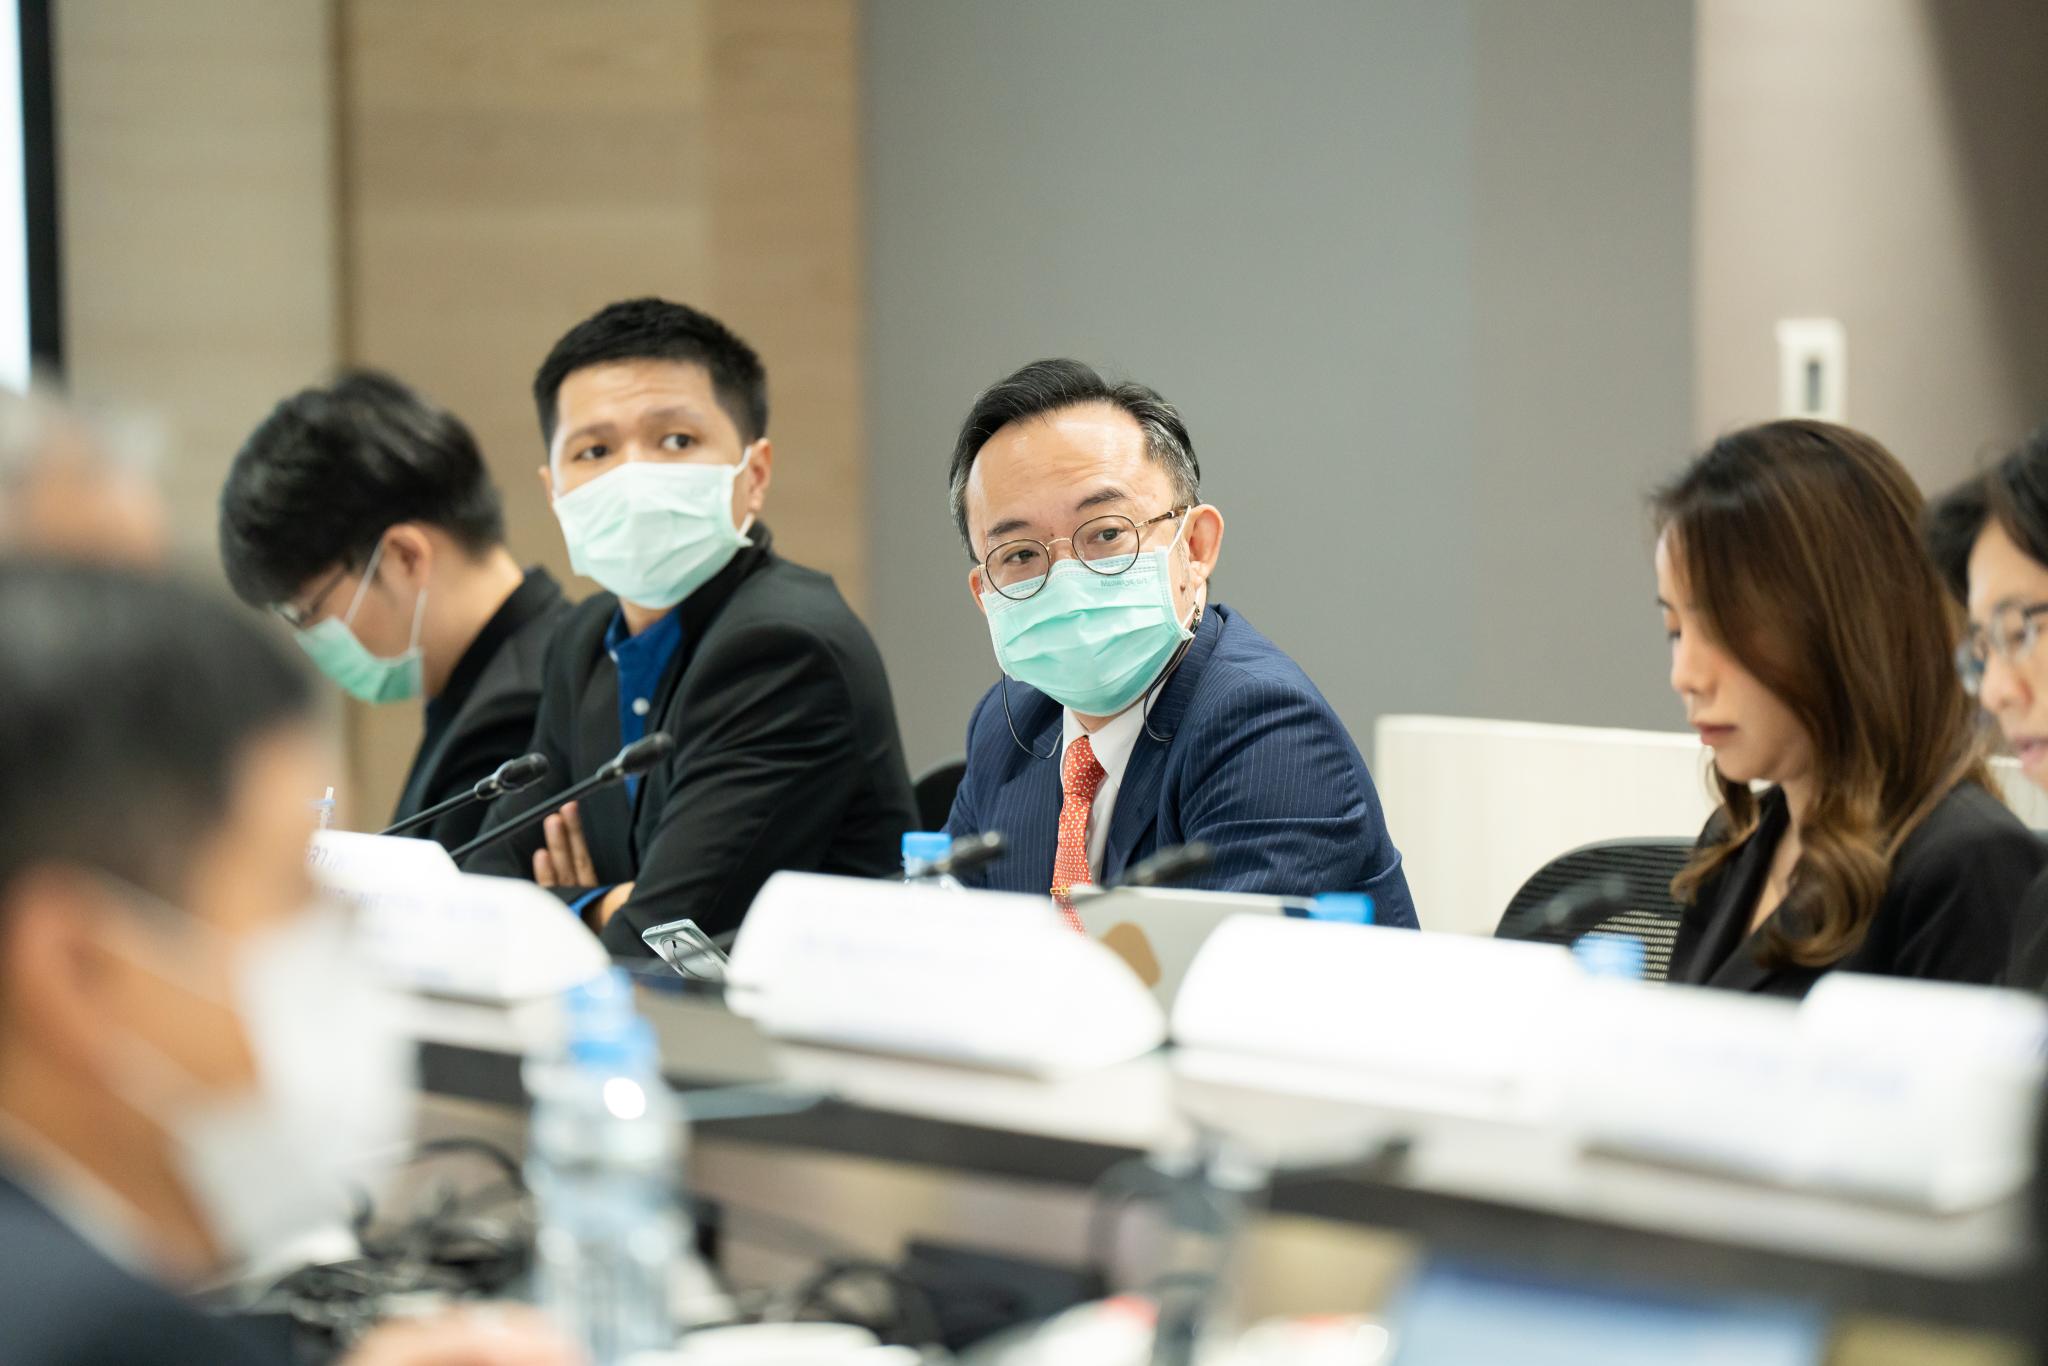 ประชุมกลุ่มสถาบันแพทยศาสตร์แห่งประเทศไทย ครั้งที่ 6 ประจำปี 2566